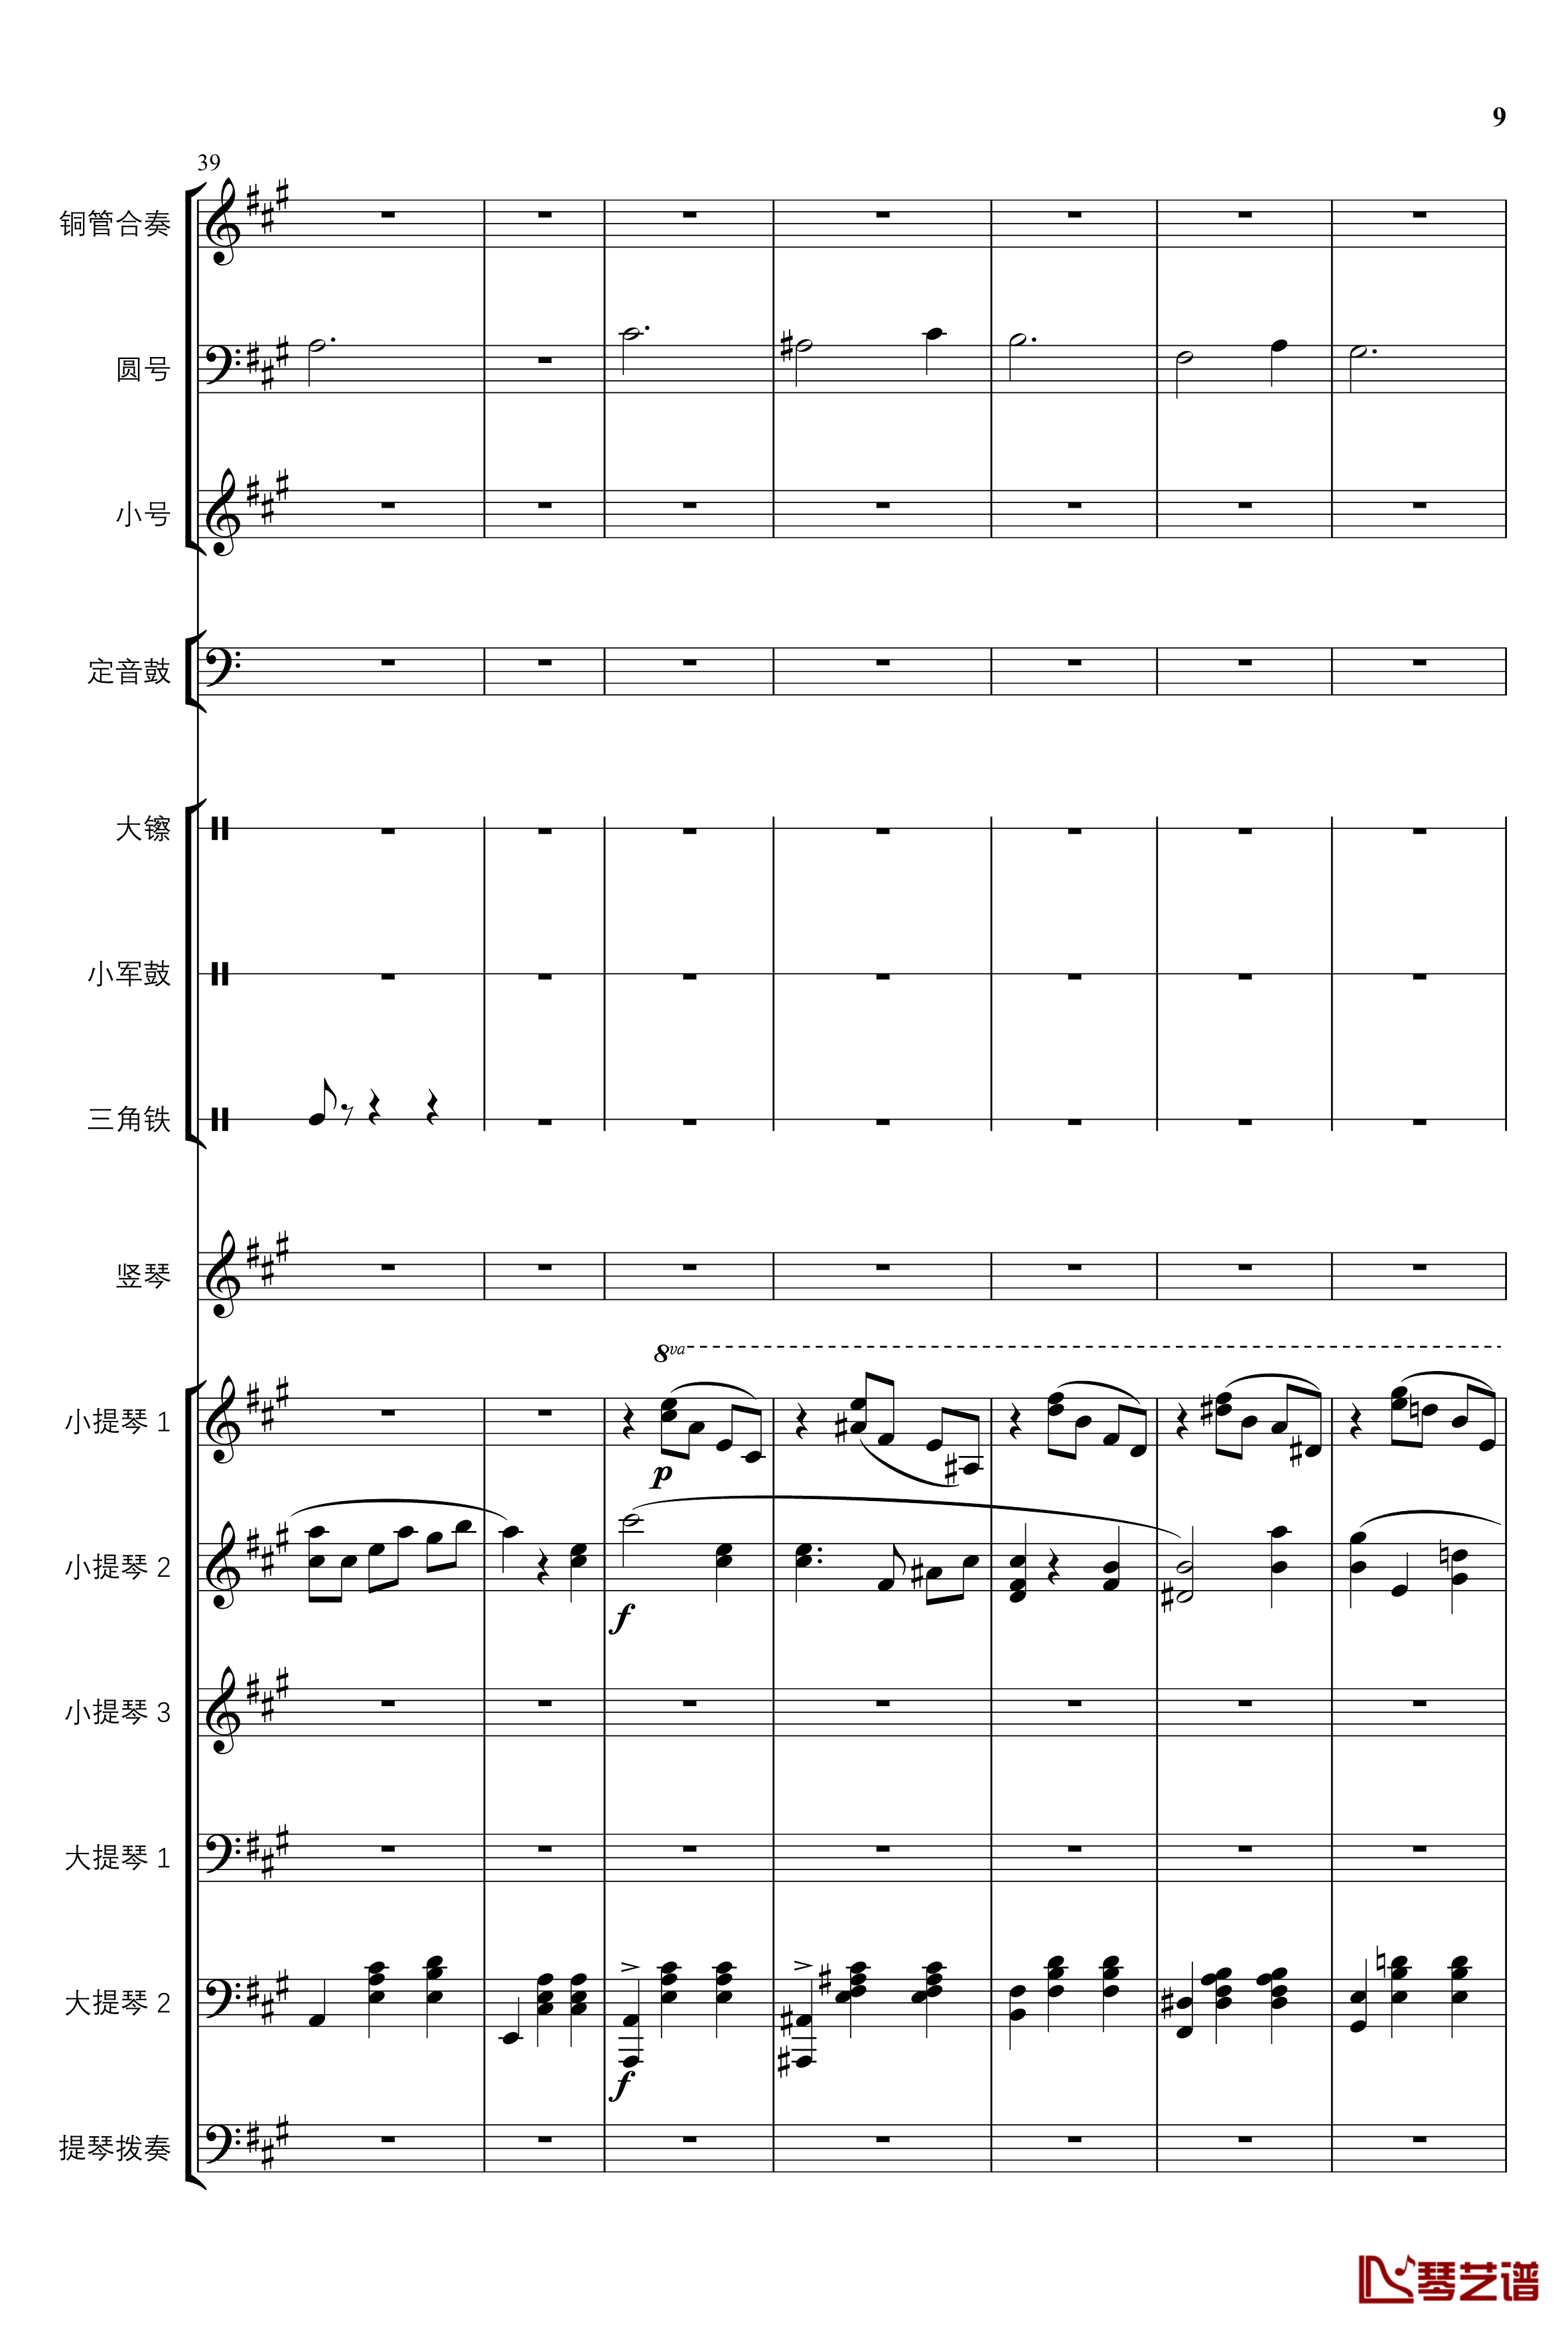 2013考试周的叙事曲钢琴谱-管弦乐重编曲版-江畔新绿9